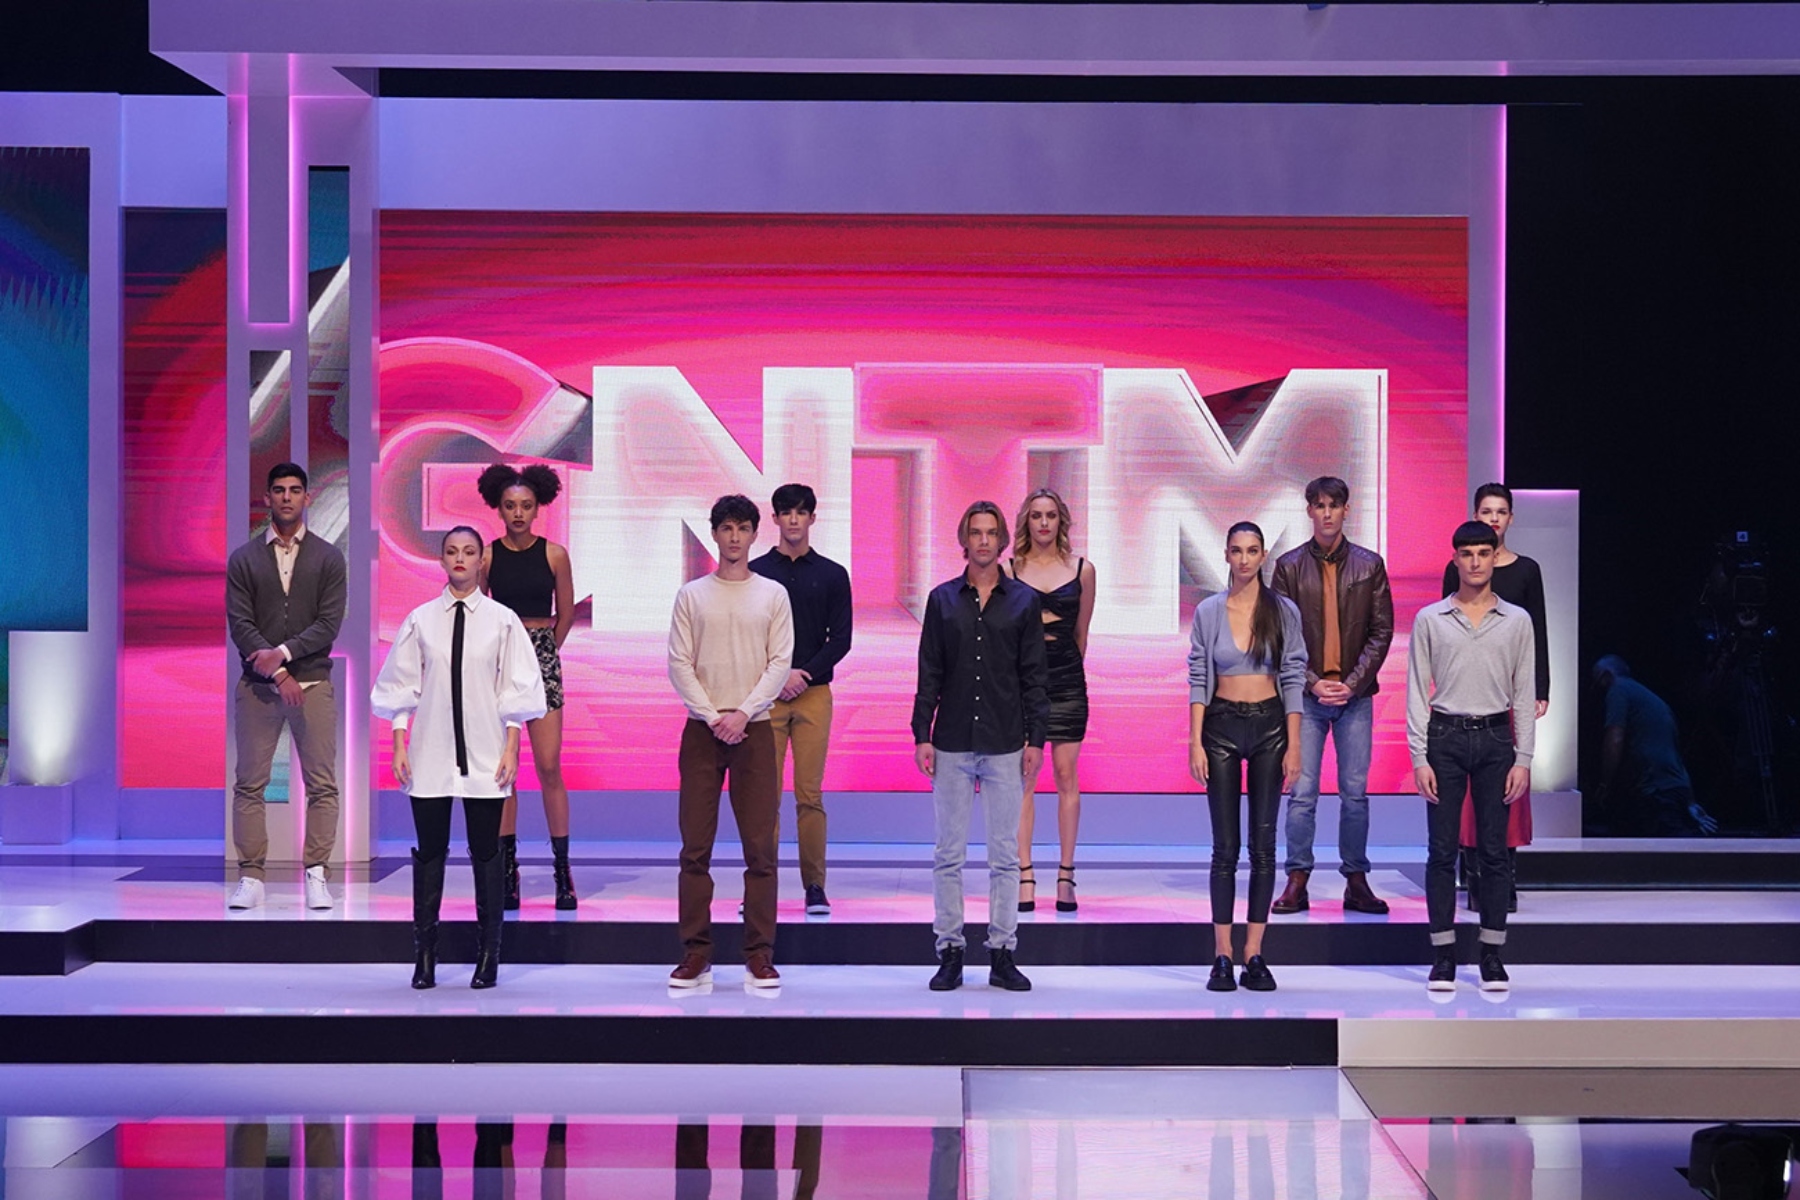 GNTM 16/11: Τι θα συμβεί στο αποψινό επεισόδιο του fashion reality; [trailer]